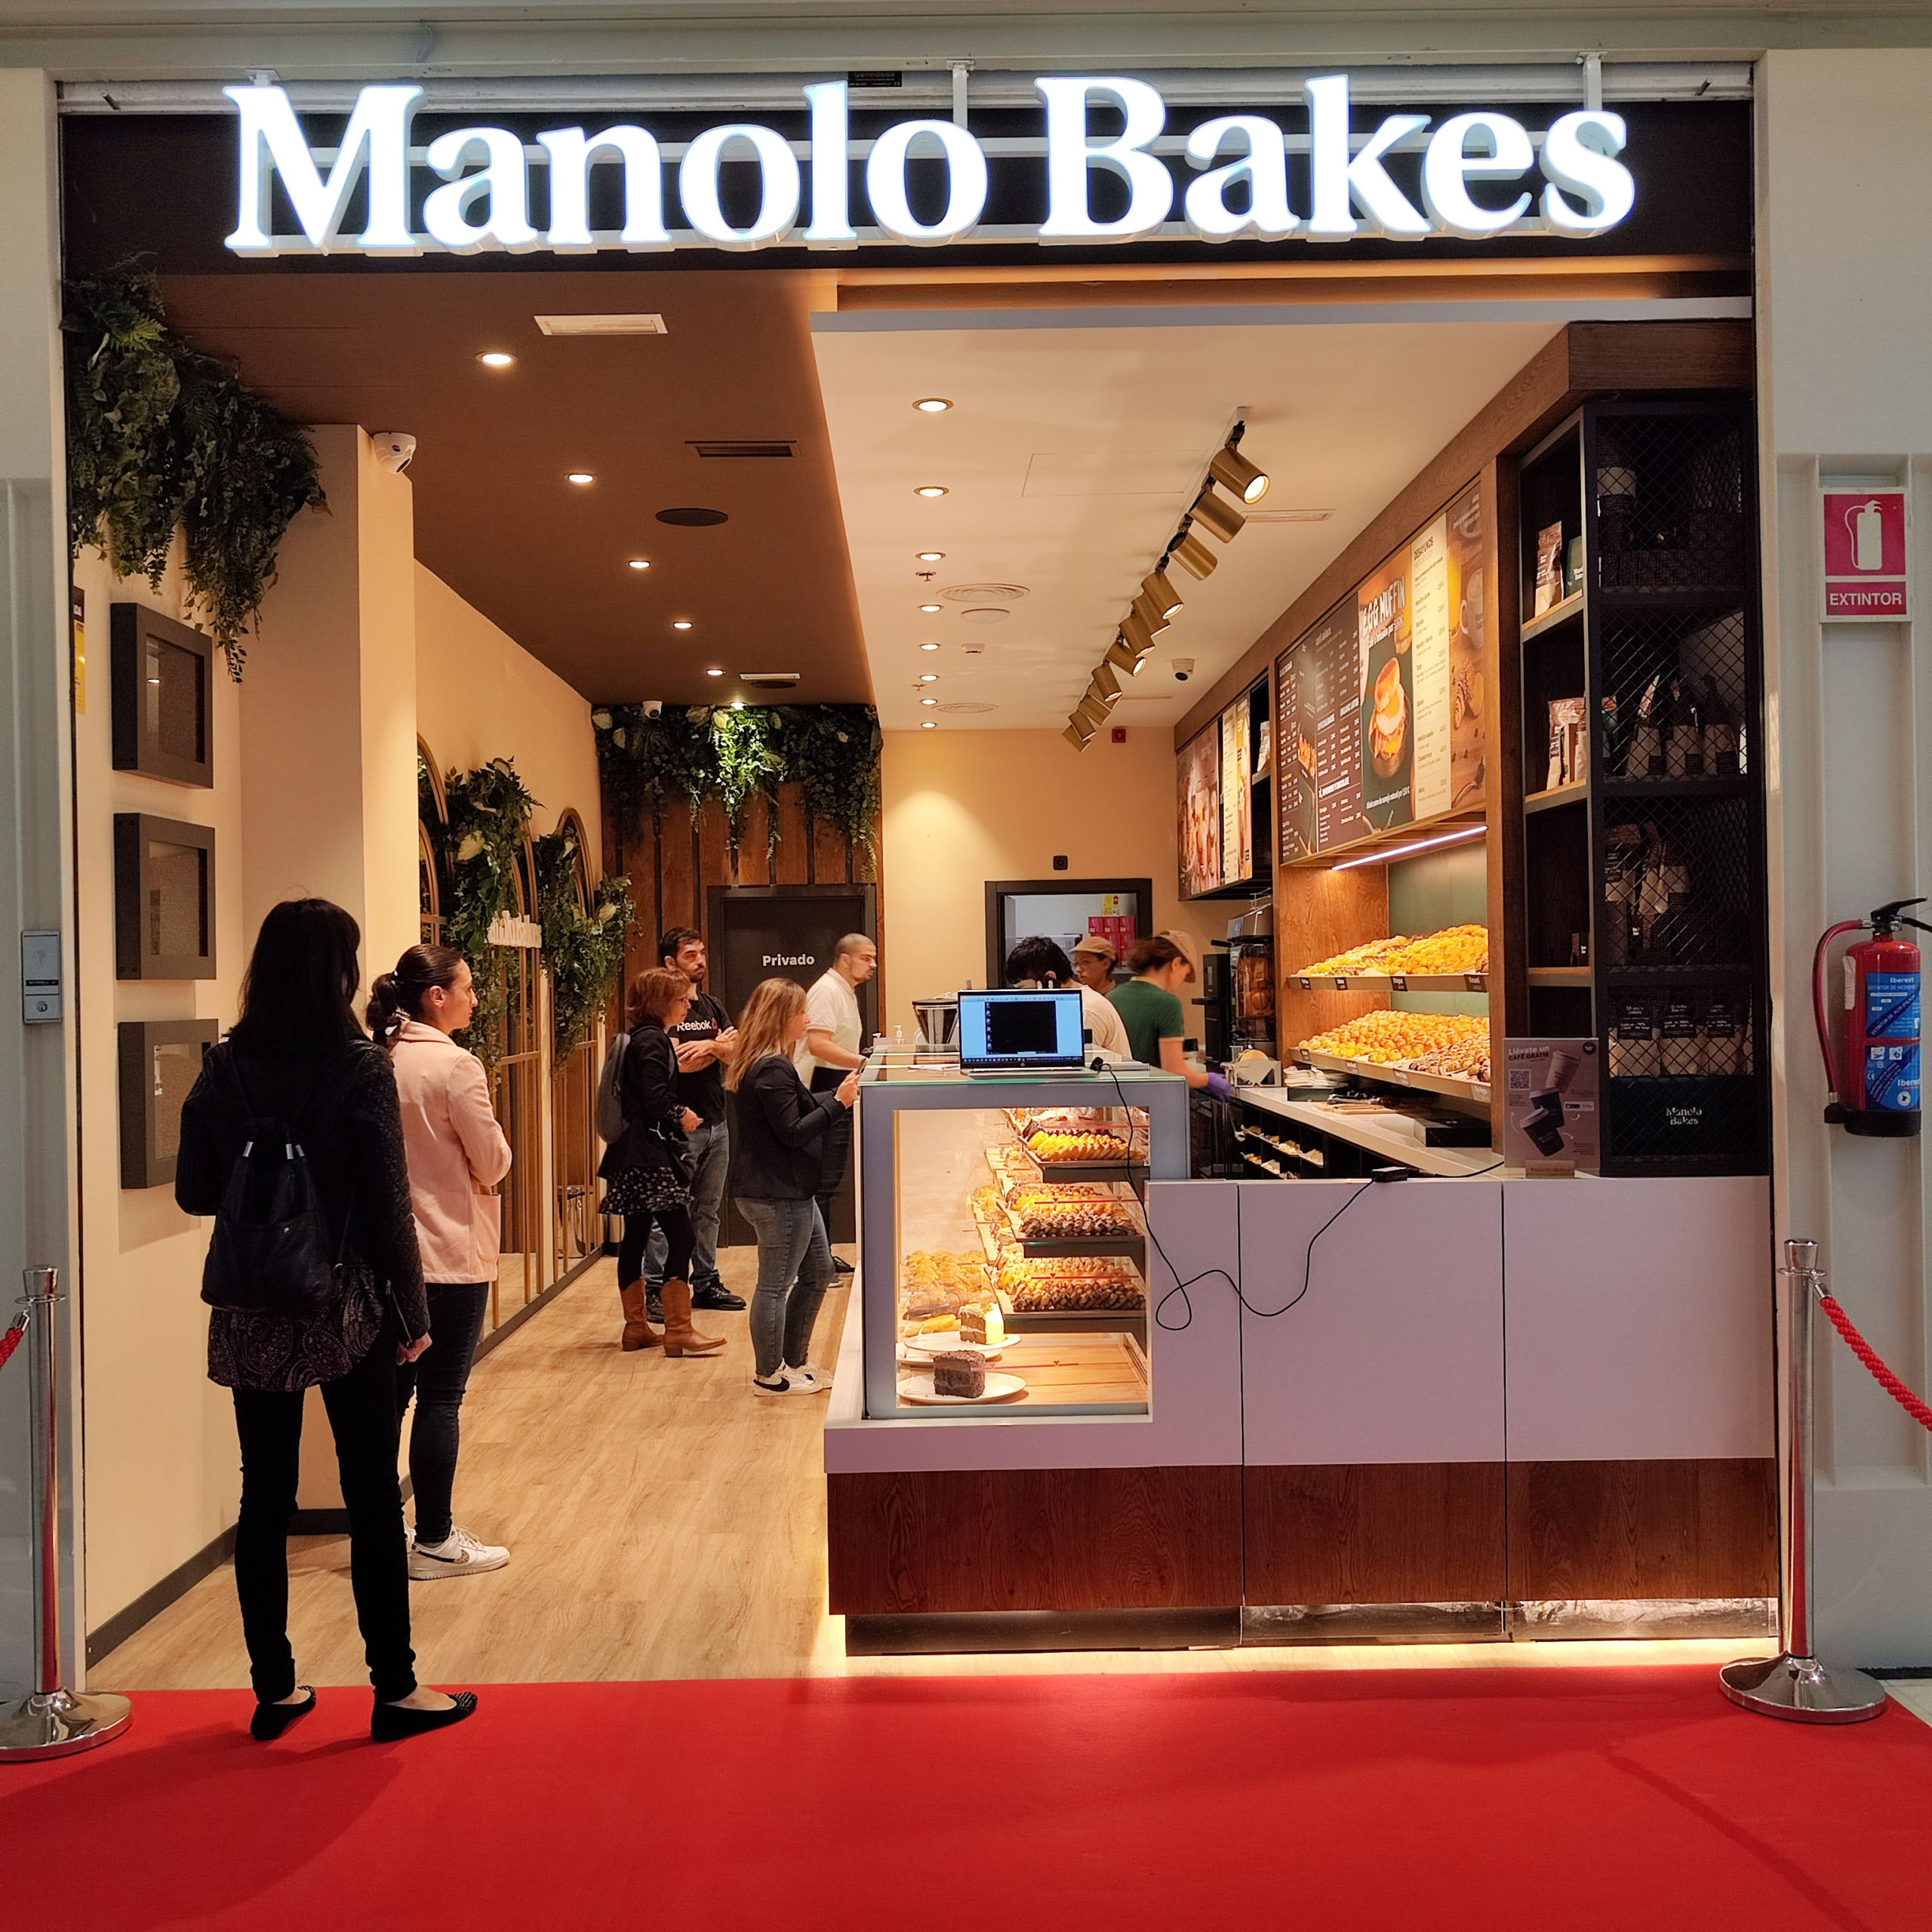 Manolo Bakes inaugura un nuevo establecimiento en Vallsur